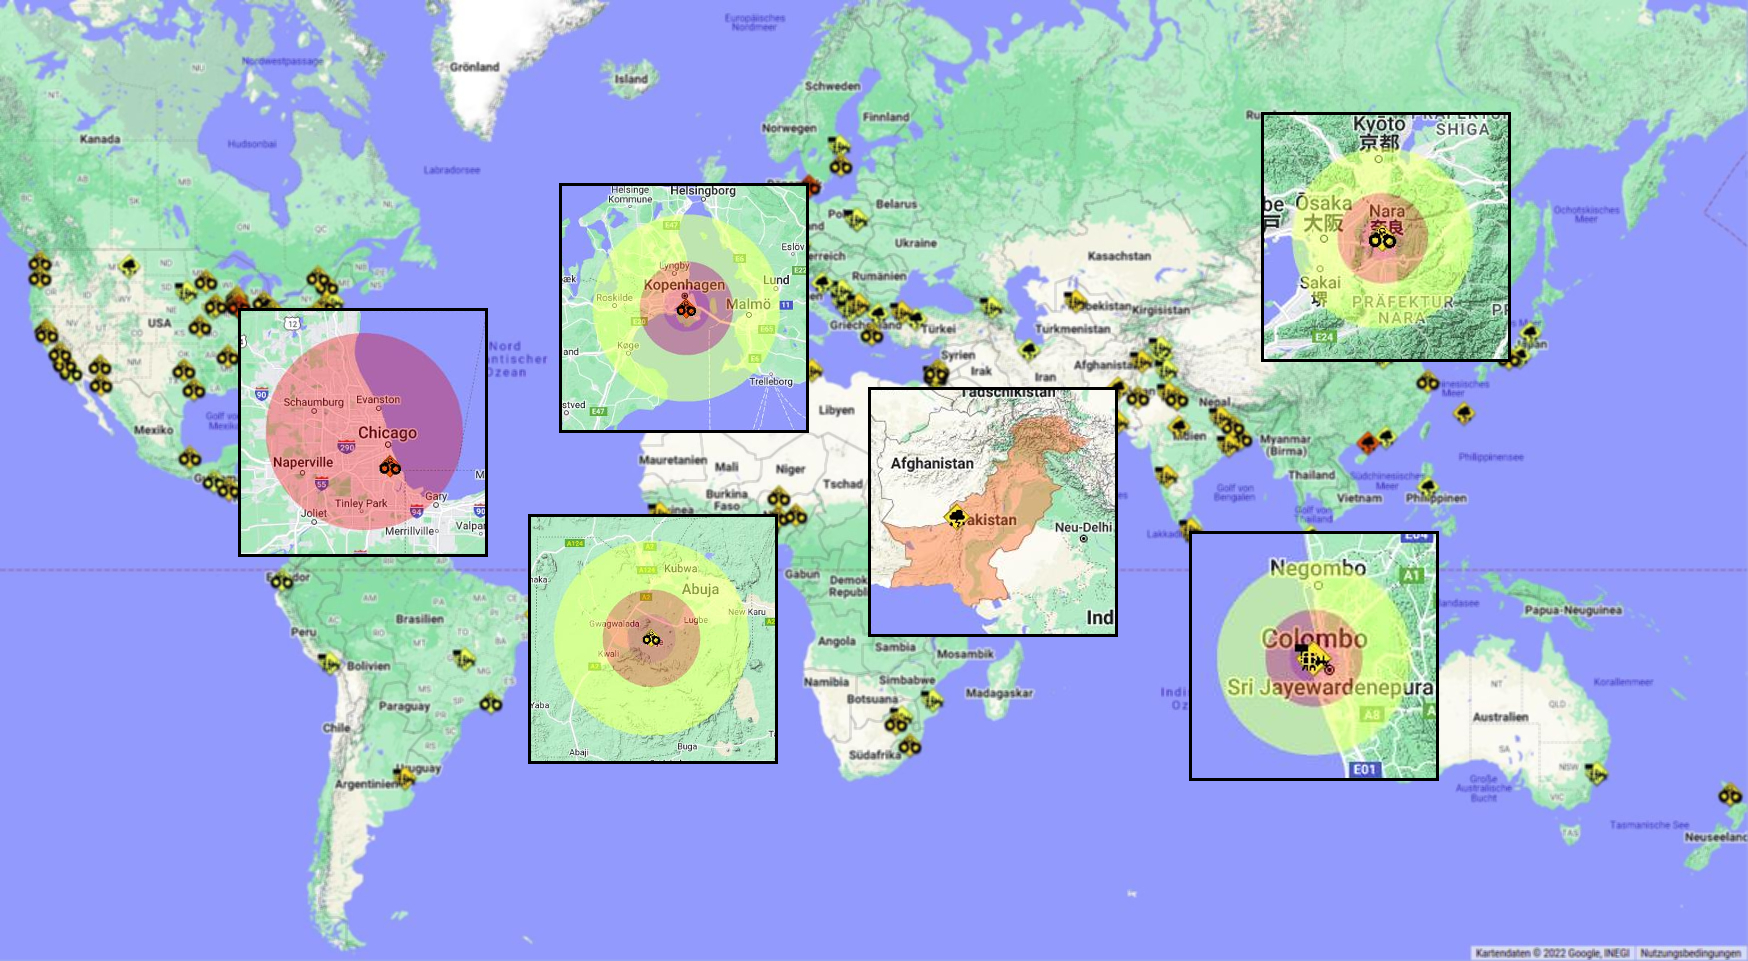 Weltkarte und lokalisierte Ereignisse